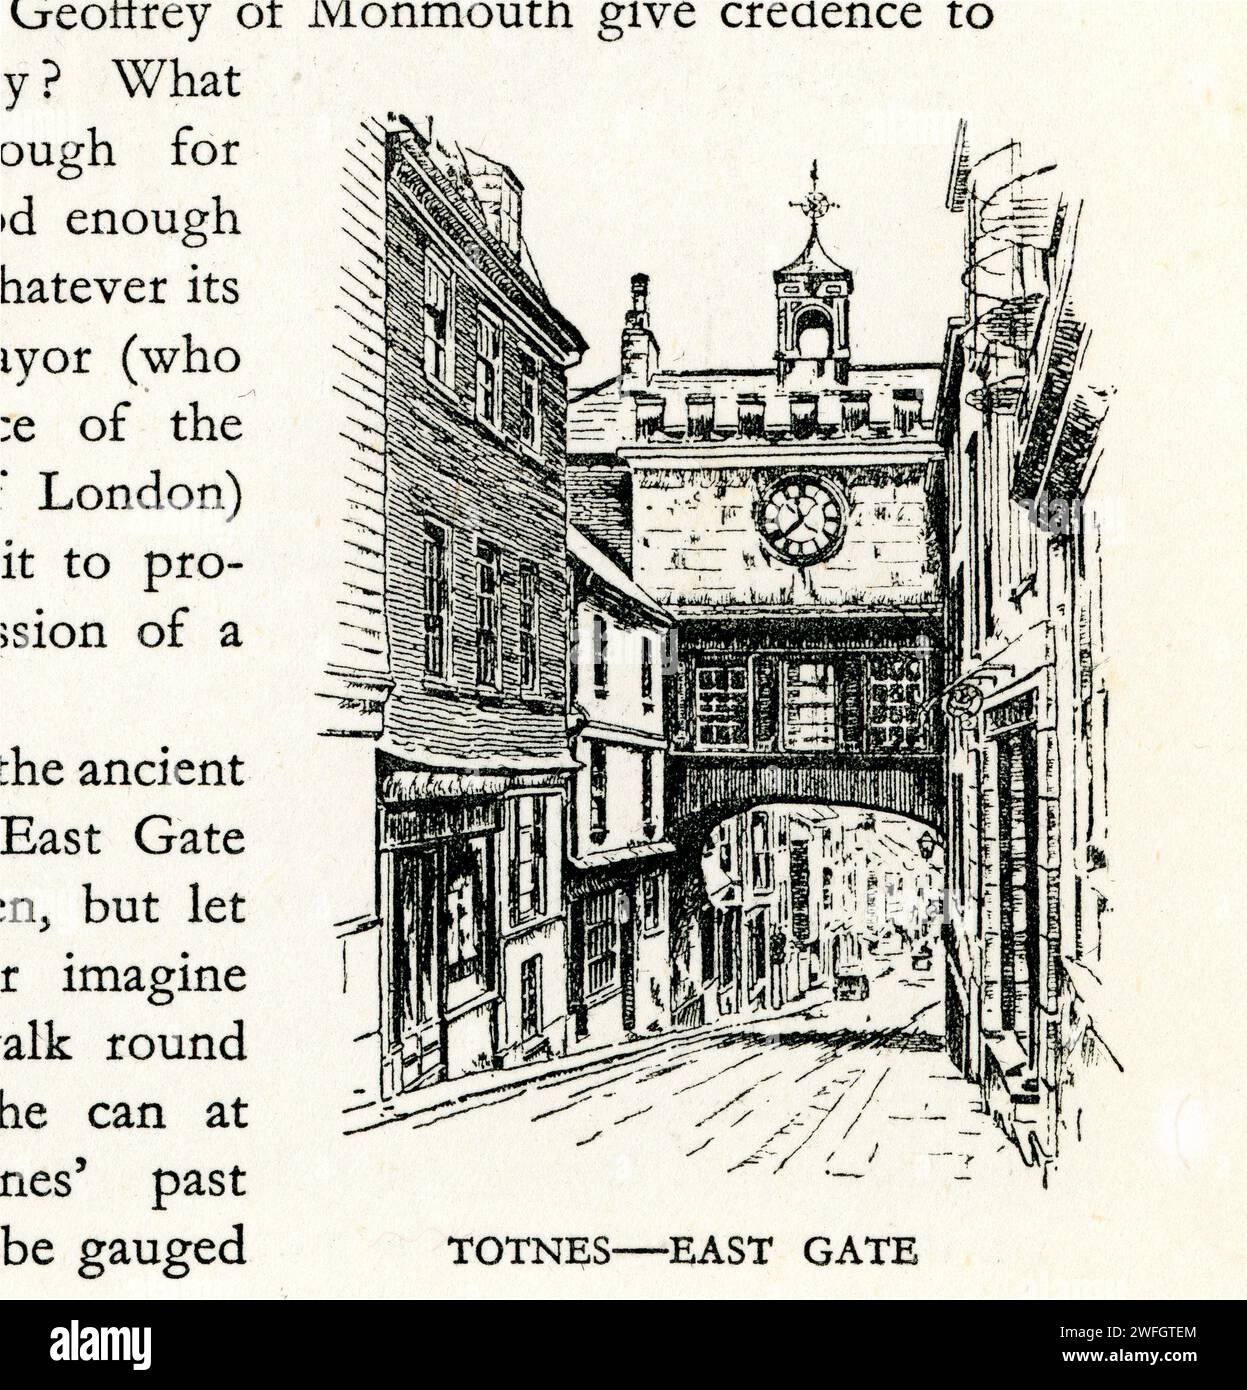 Stift- und Tintenskizze - Totnes - East Gate, South Hams District, Devon. Illustration aus dem Buch Glorious Devon. Von S.P.B. Mais, veröffentlicht von der London Great Western Railway Company, 1928 Stockfoto